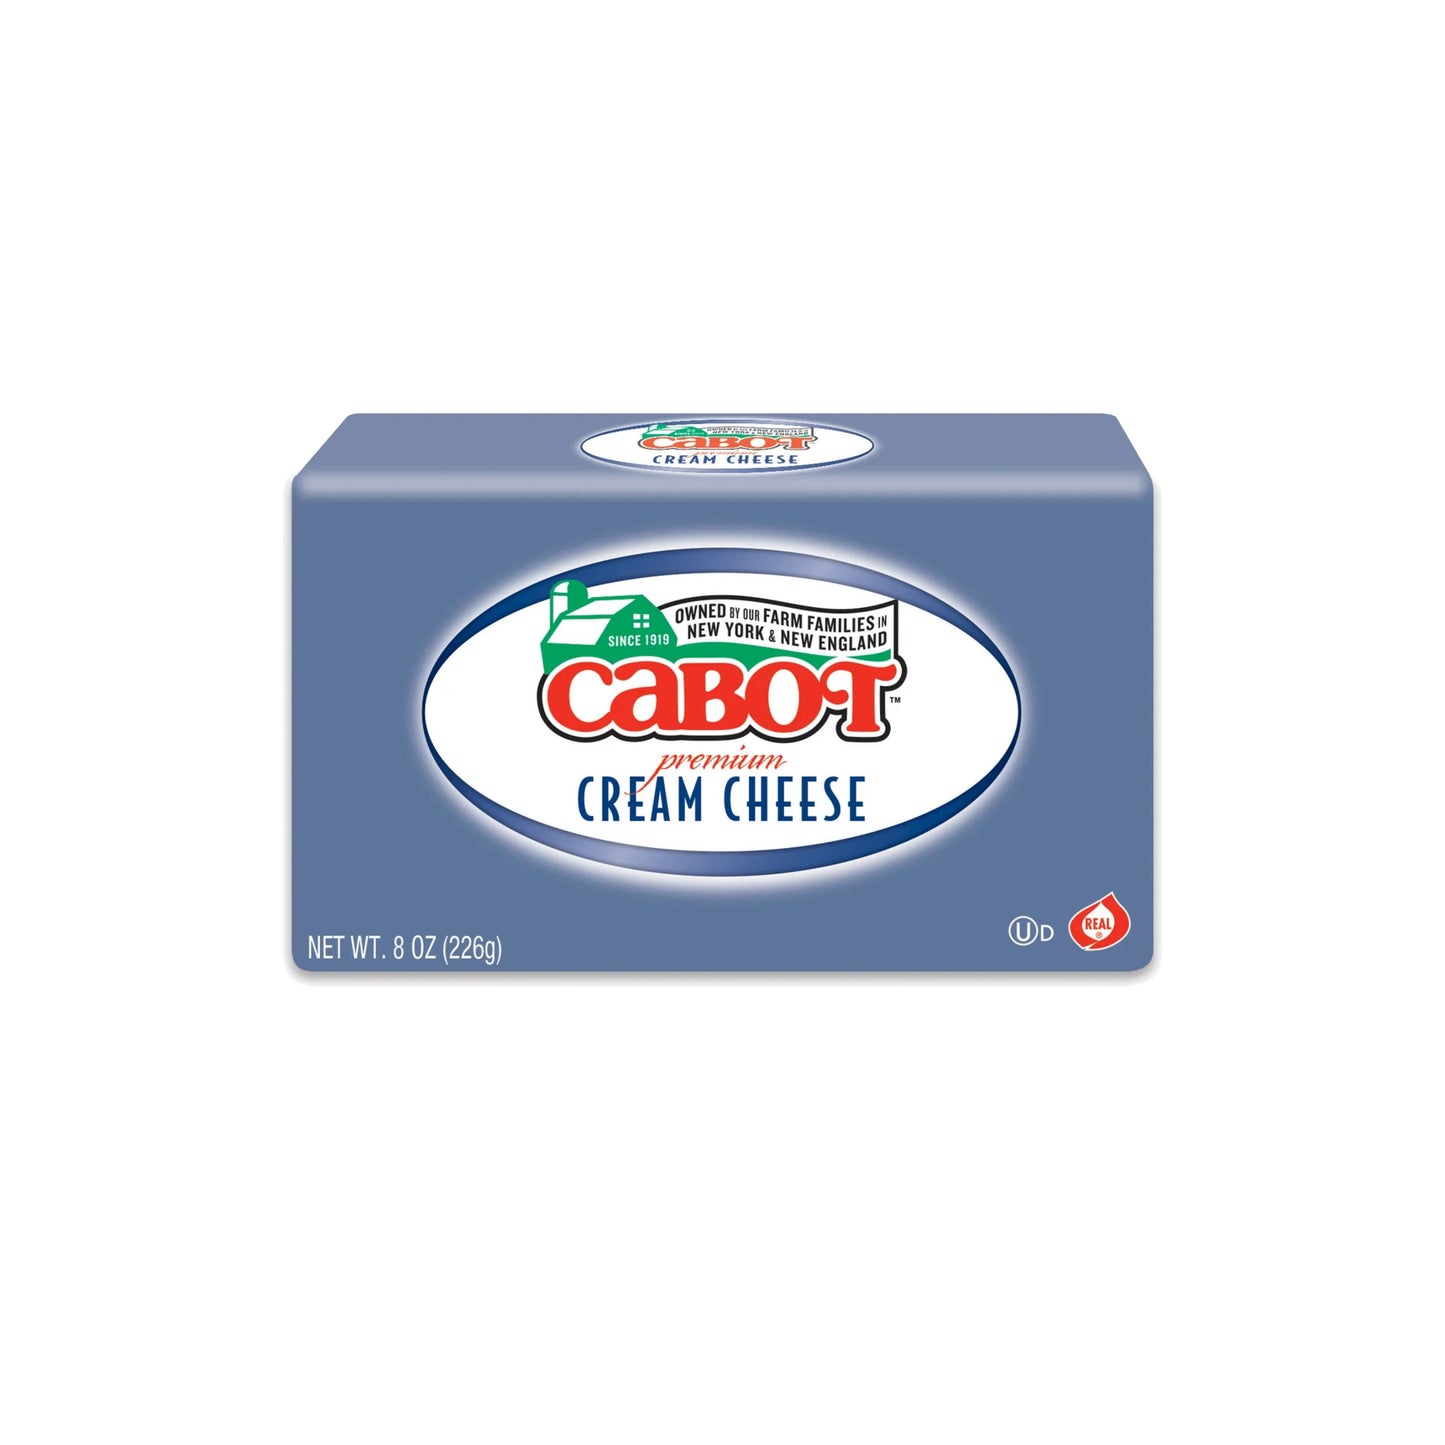 Cabot Cream Cheese (Box)